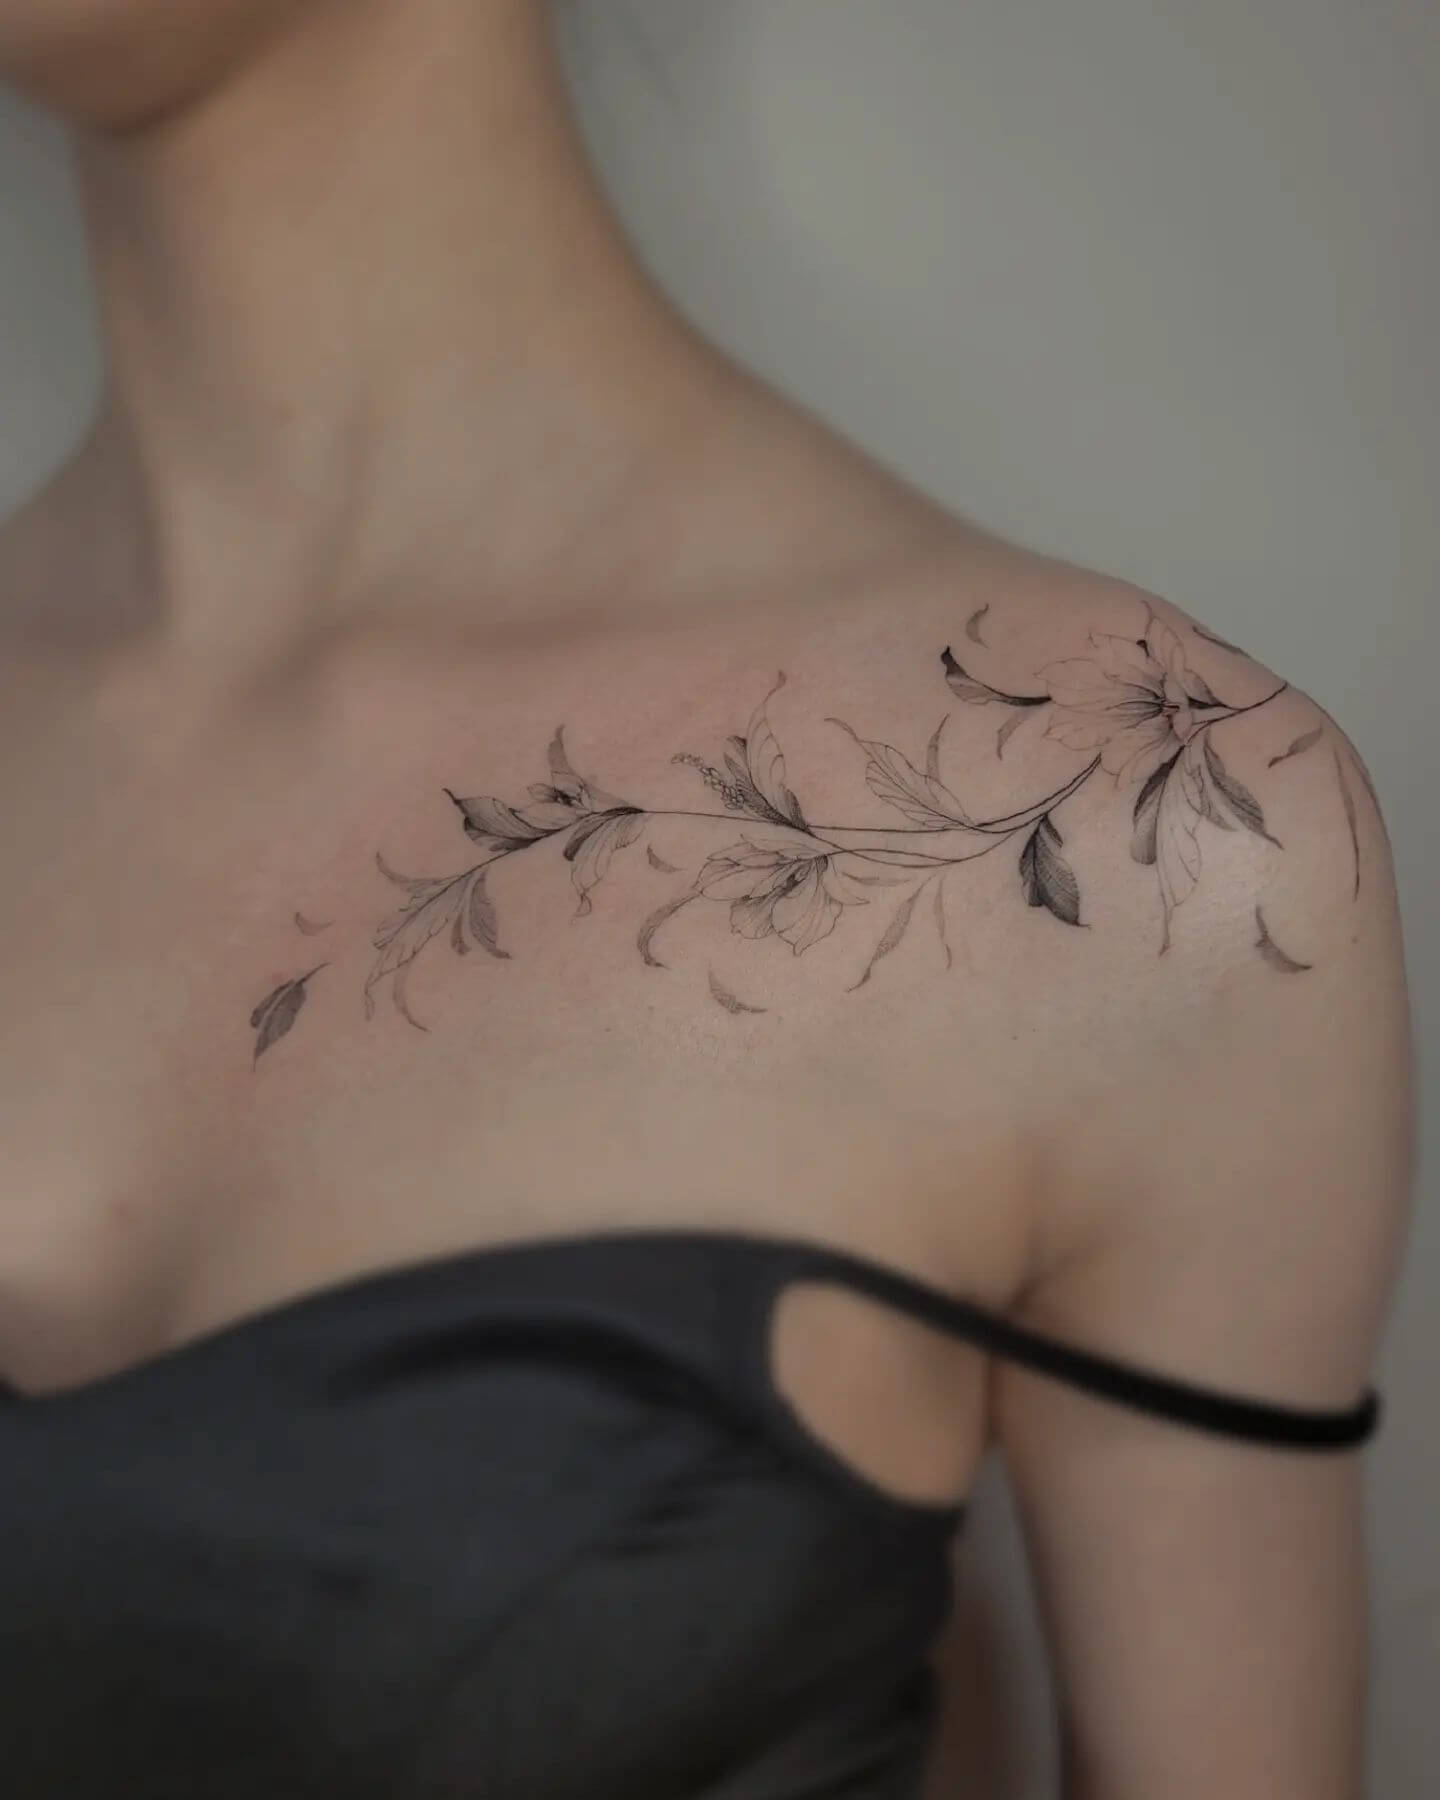 Collar Bone Leaf Tattoo